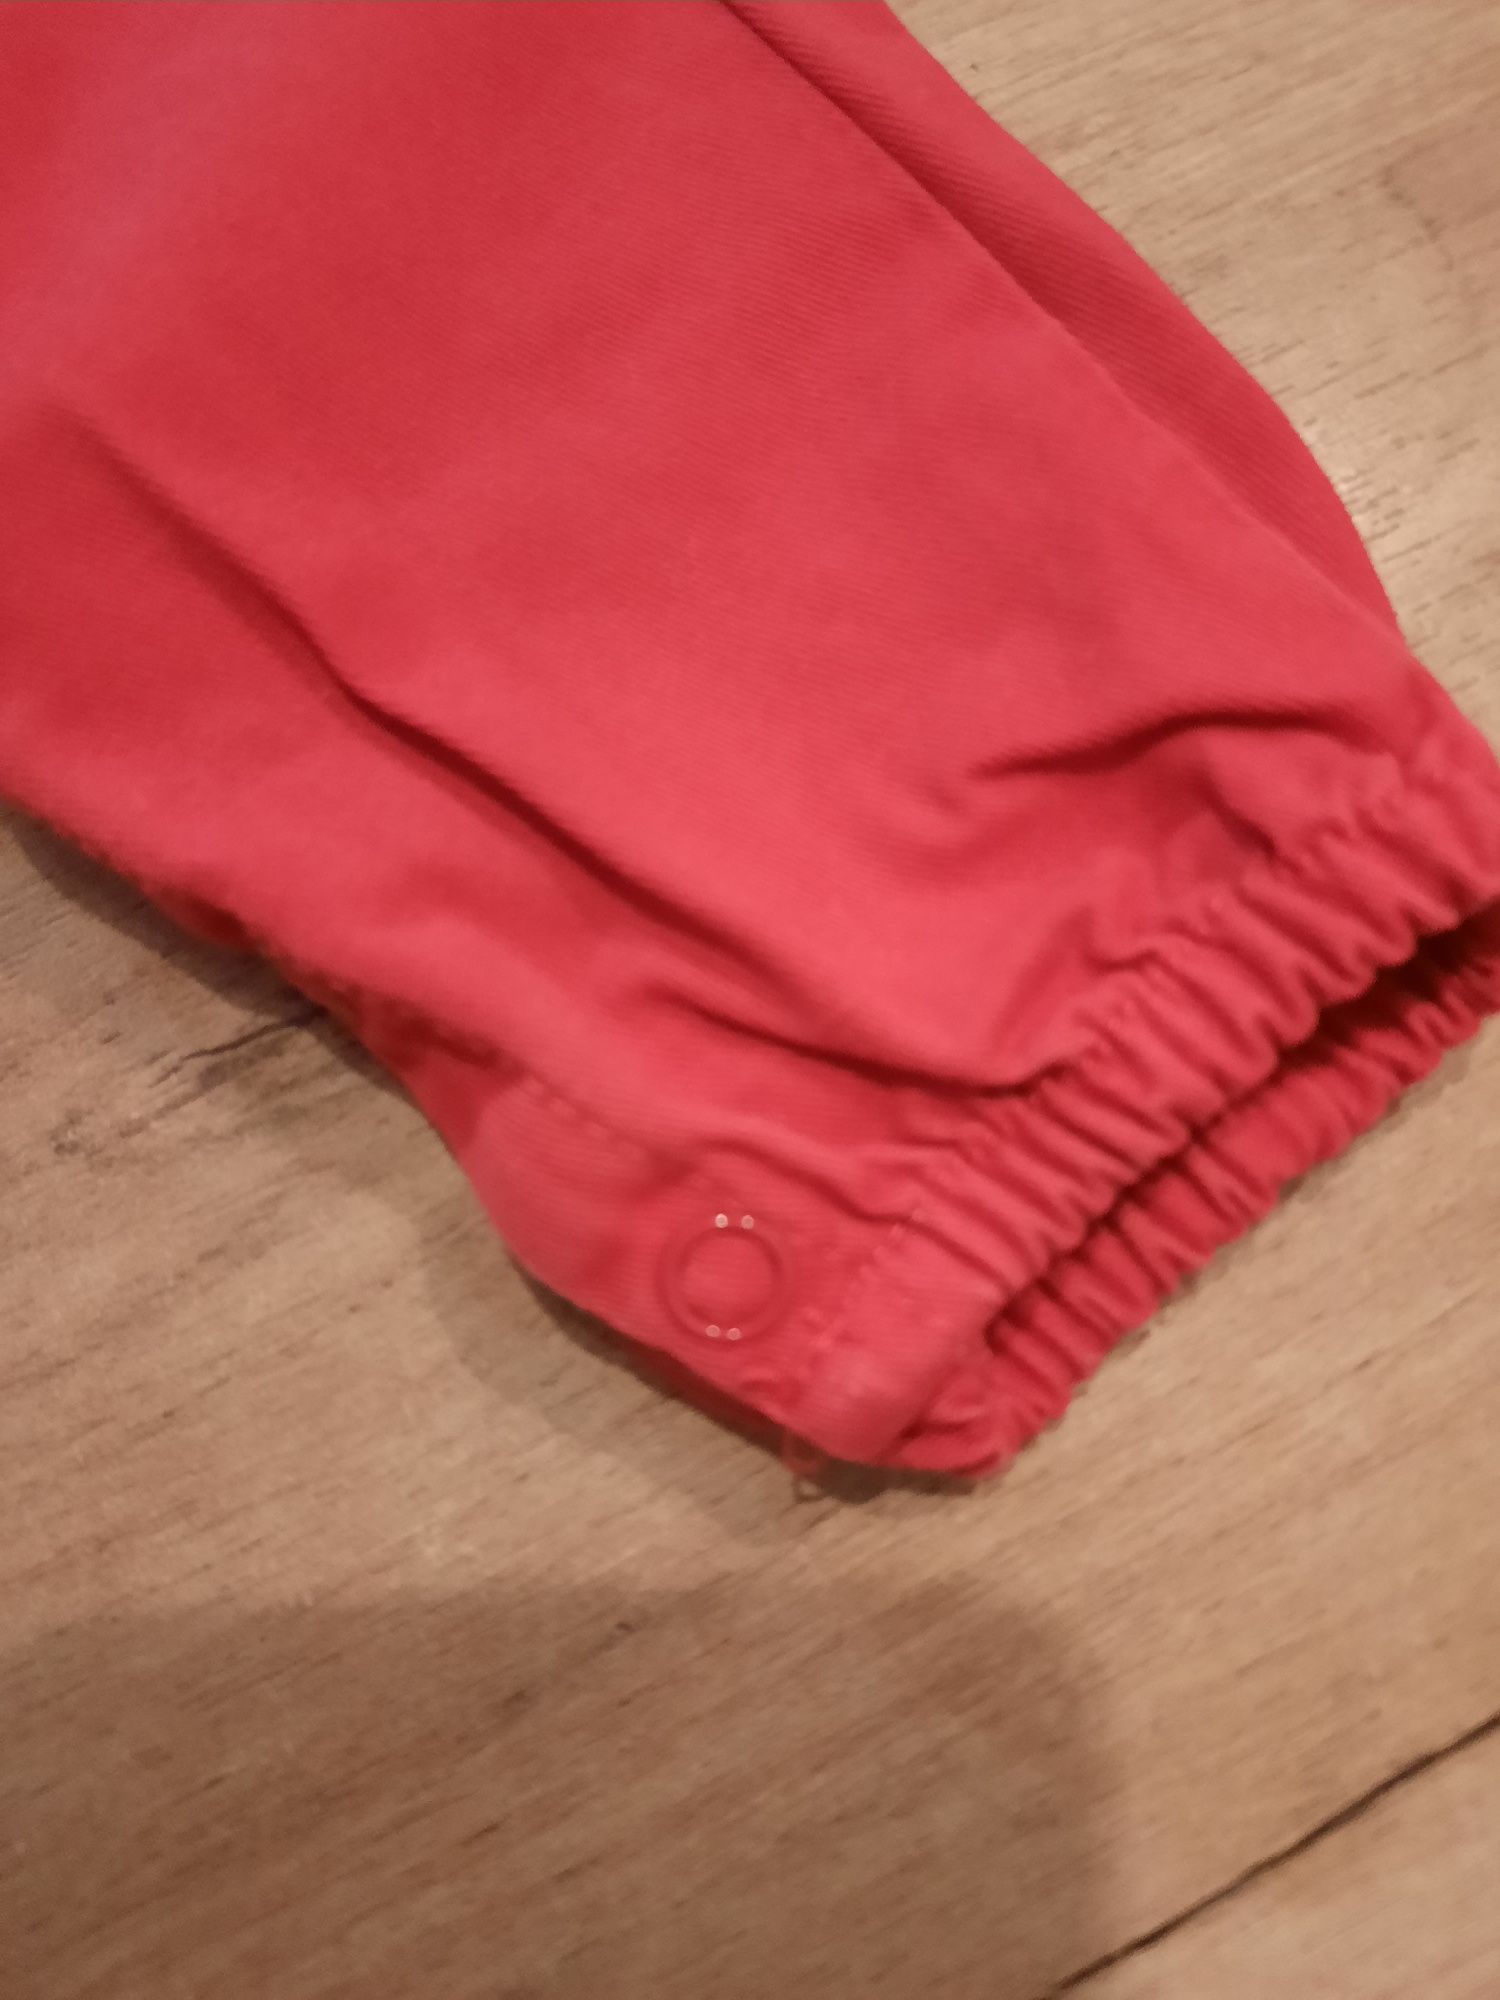 Spodnie czerwone zapinane